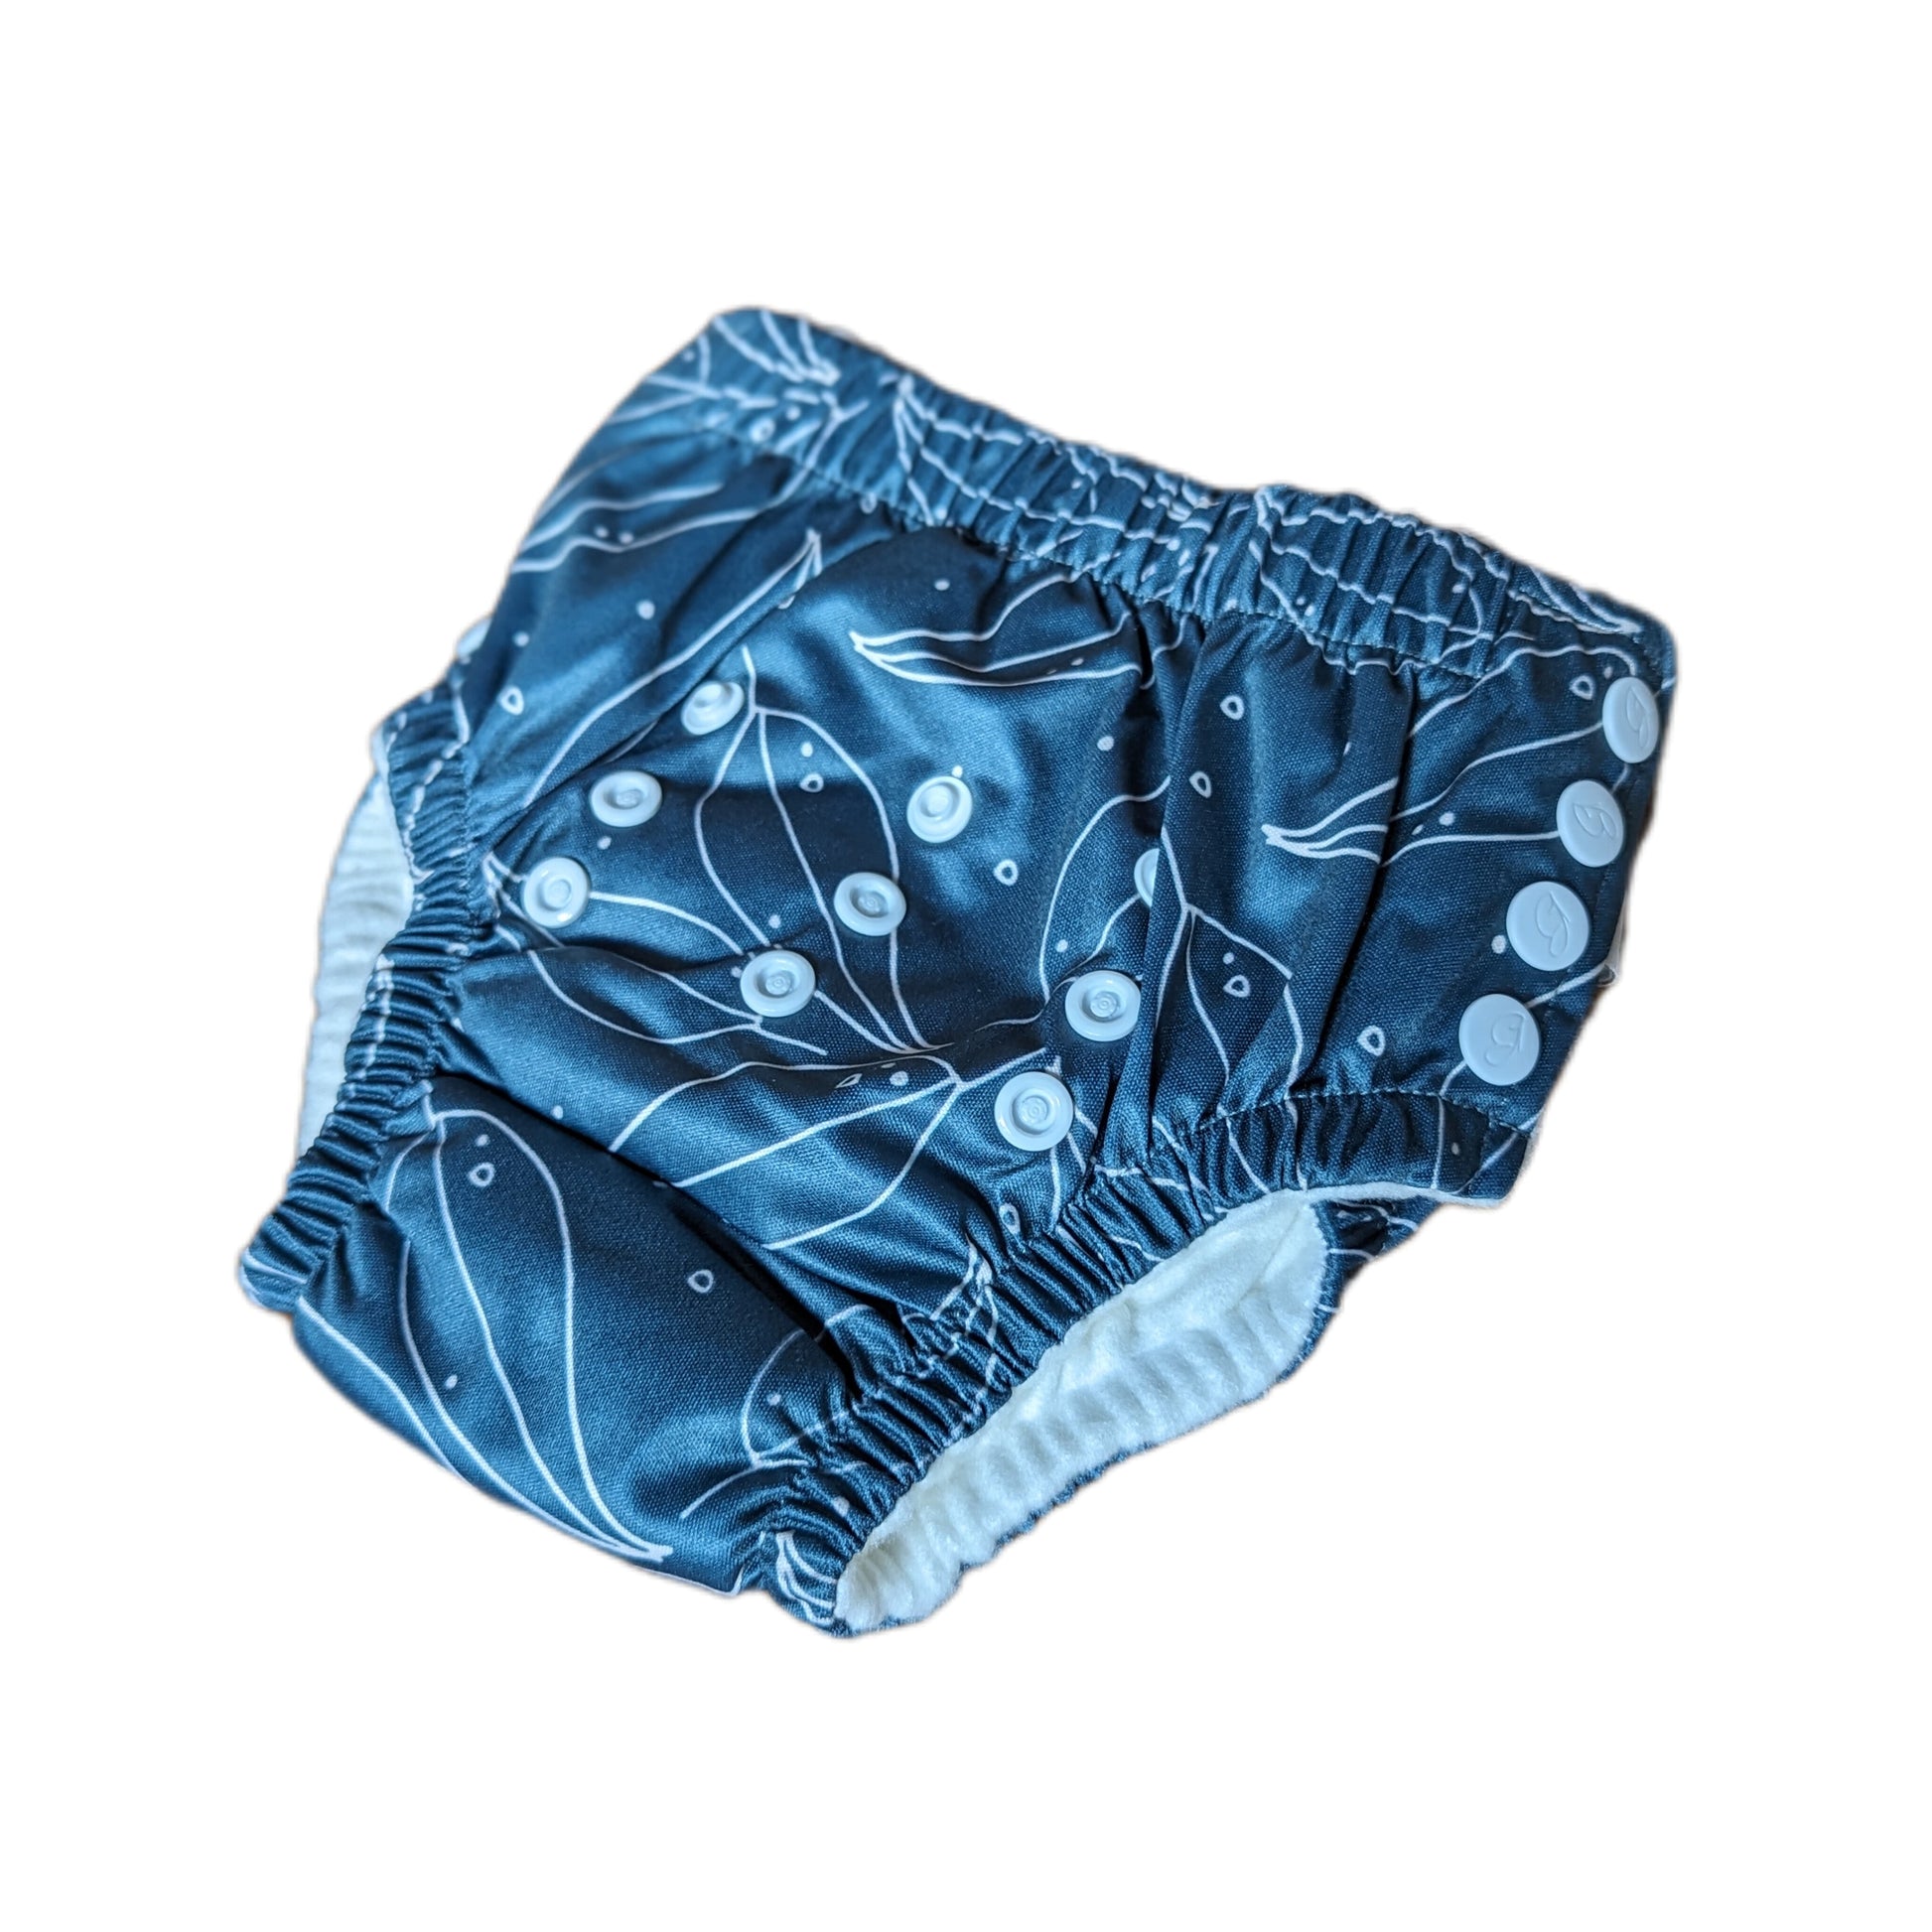 Bare & Boho Cloth Nappy Training Pants Medium 5-14kg – The Nappy